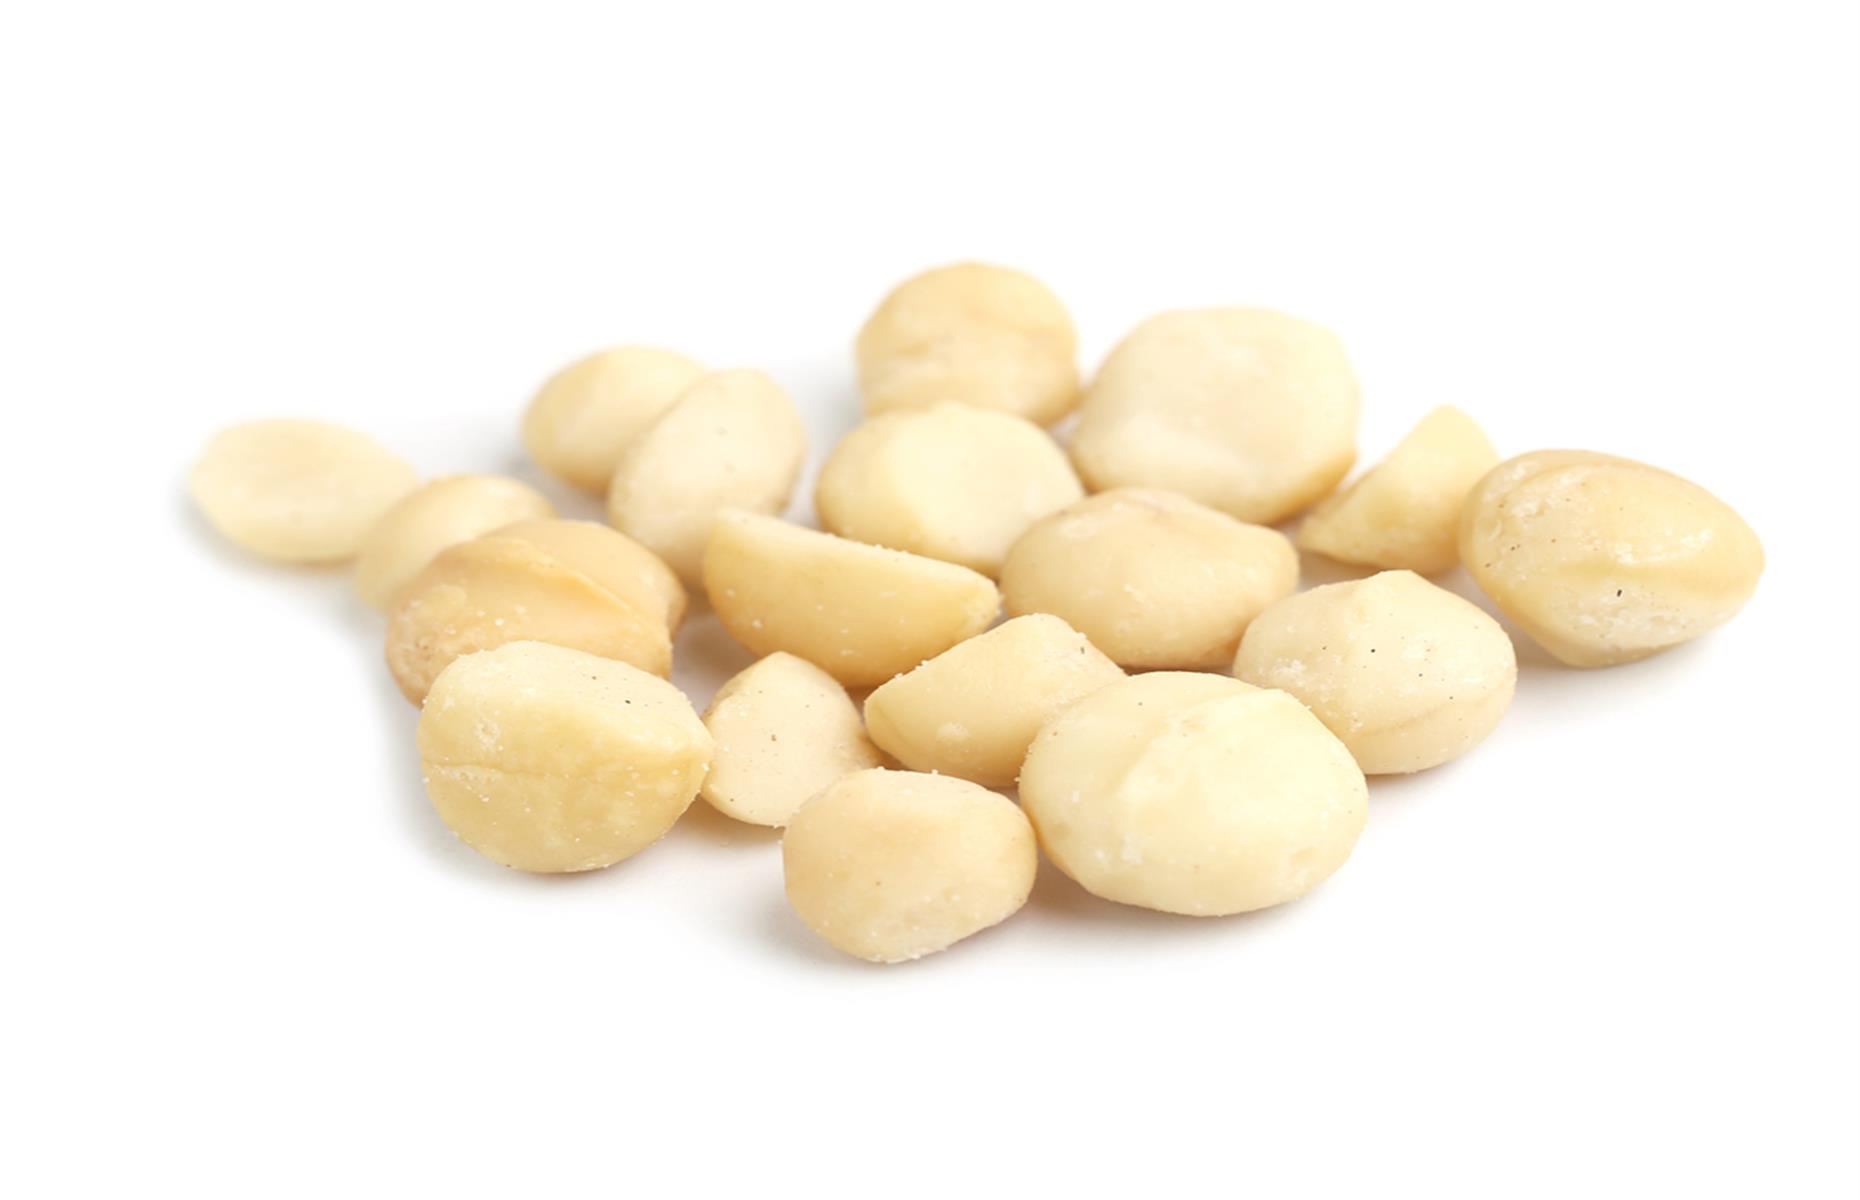 macadamia-report-pangea-brokers-nuts